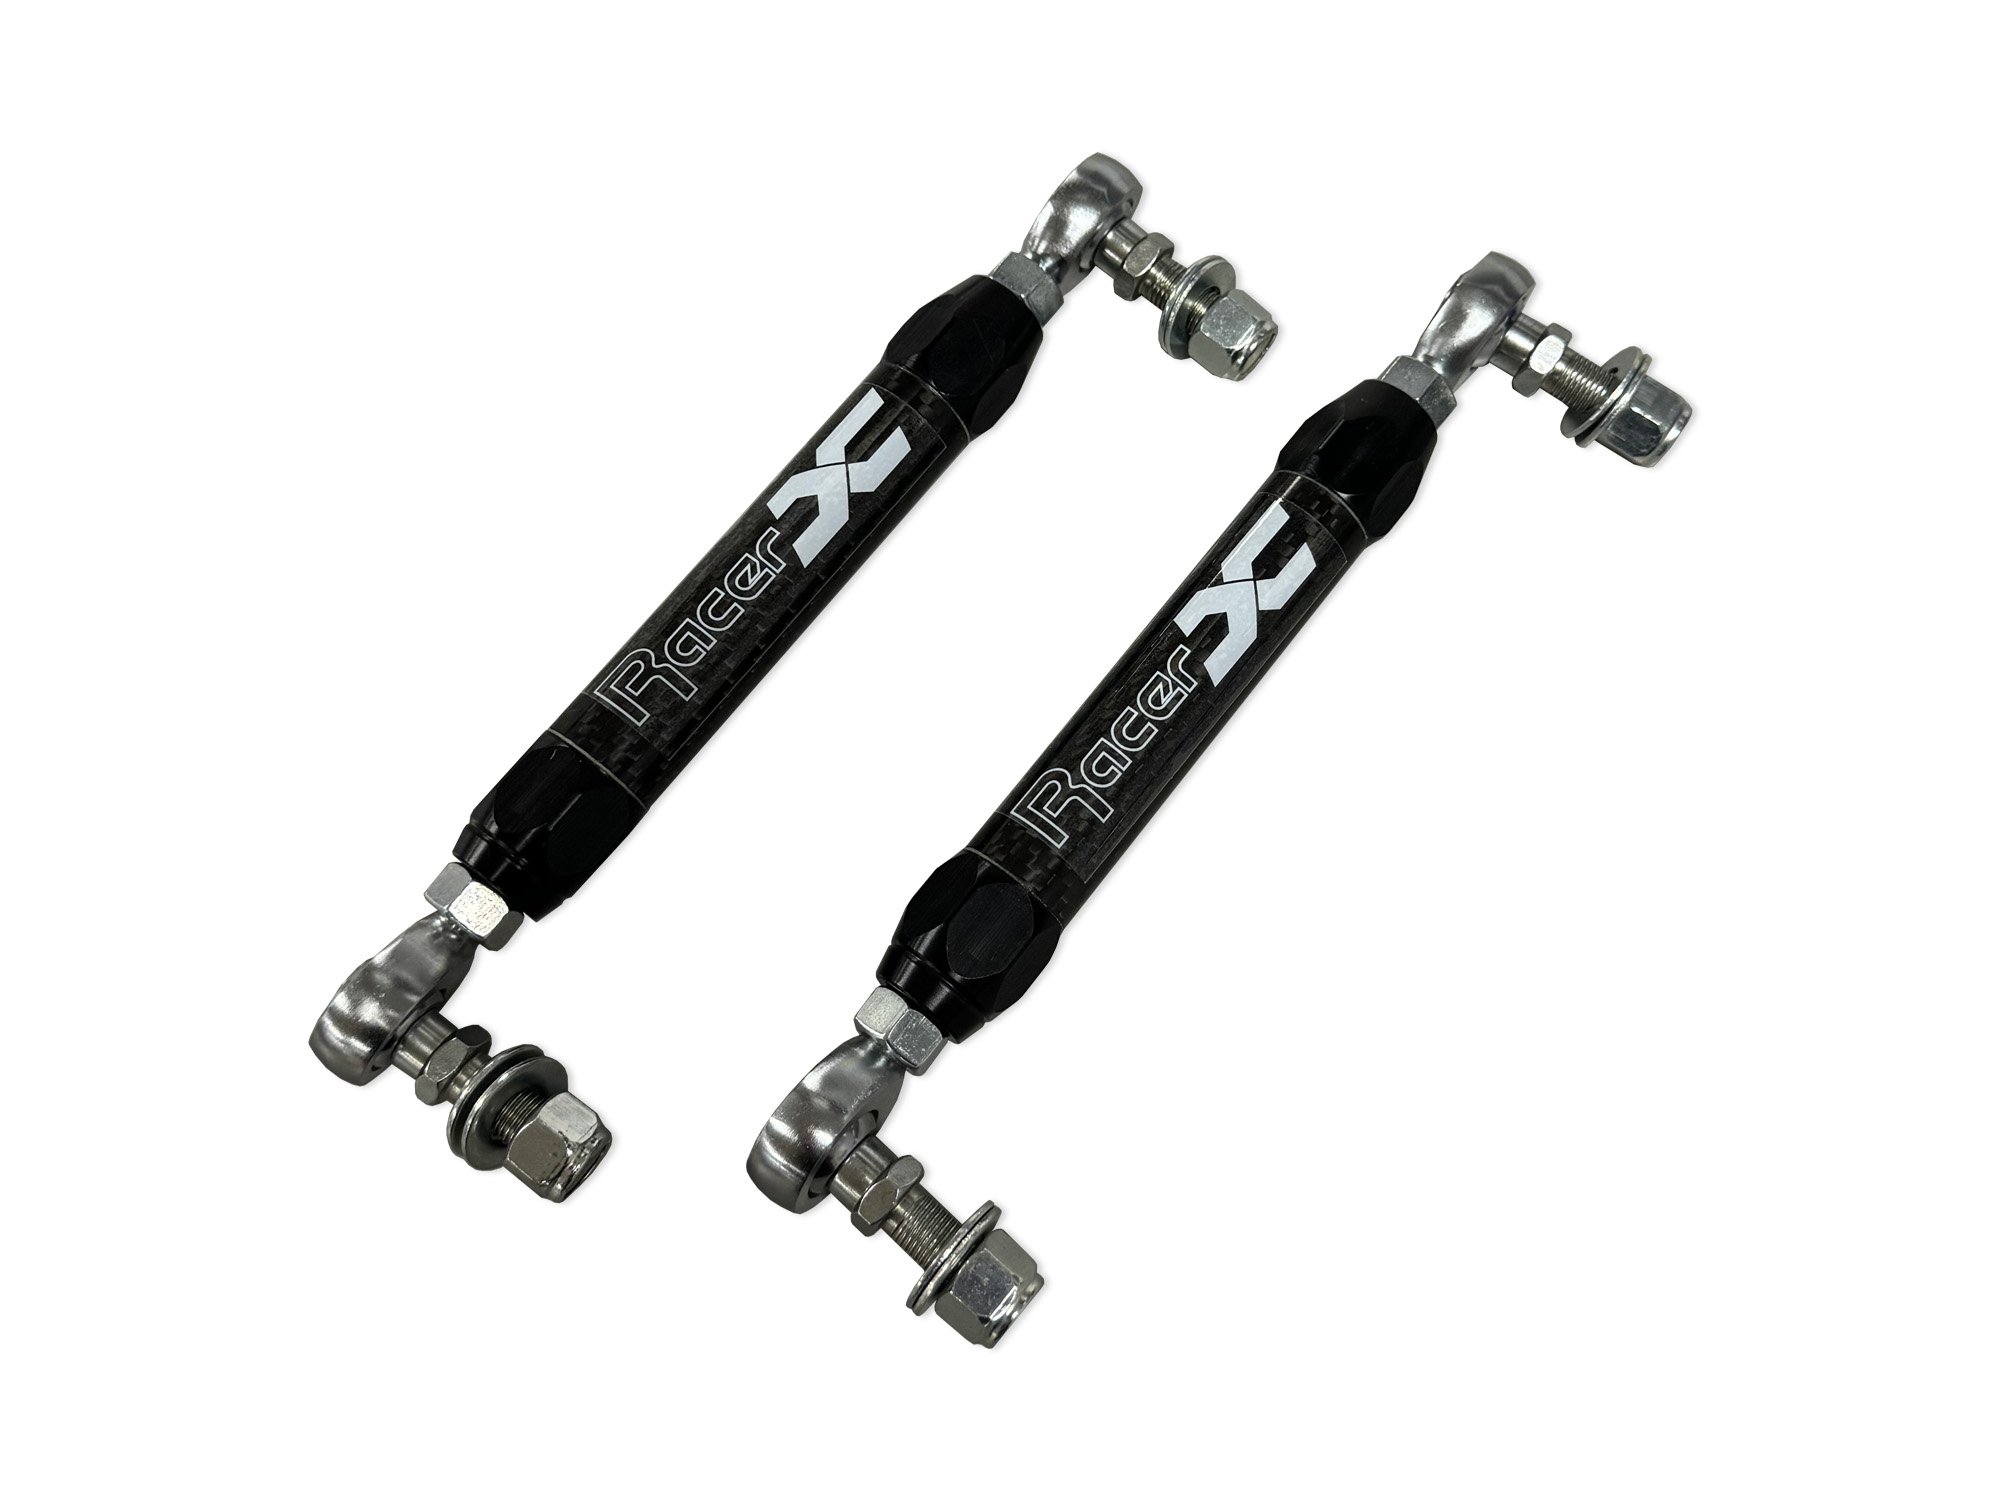 MR2 Carbon Fiber Rear End Links mr2 parts, mr2 rear end links, carbon fiber, lightweight, adjustable